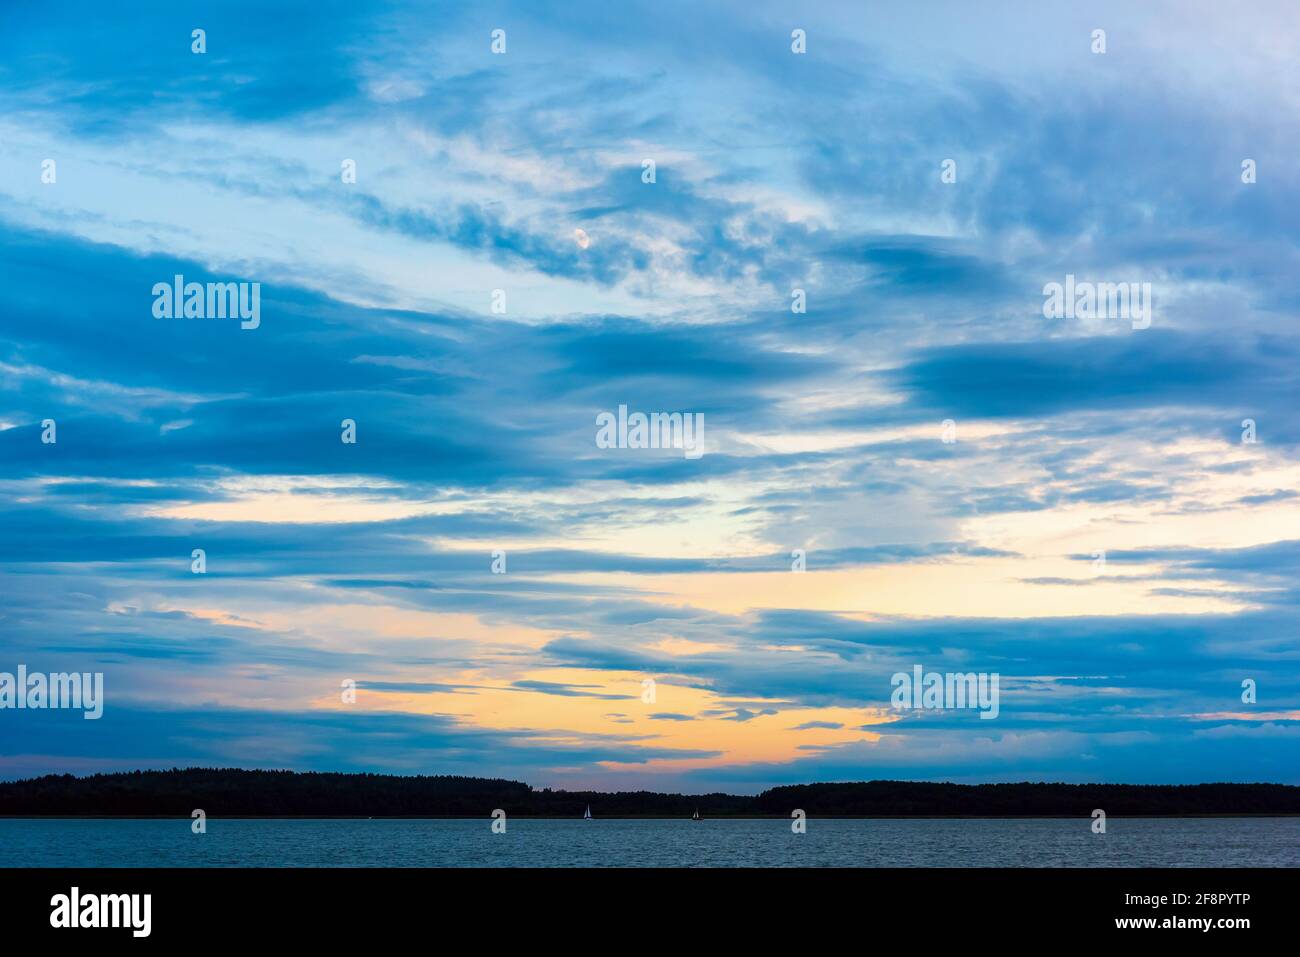 Wunderschöne Wasserlandschaft auf einem See und dramatischer düsterer und wolkiger Himmel am Abend. Schönheit in der Natur. Horizontales Foto Stockfoto